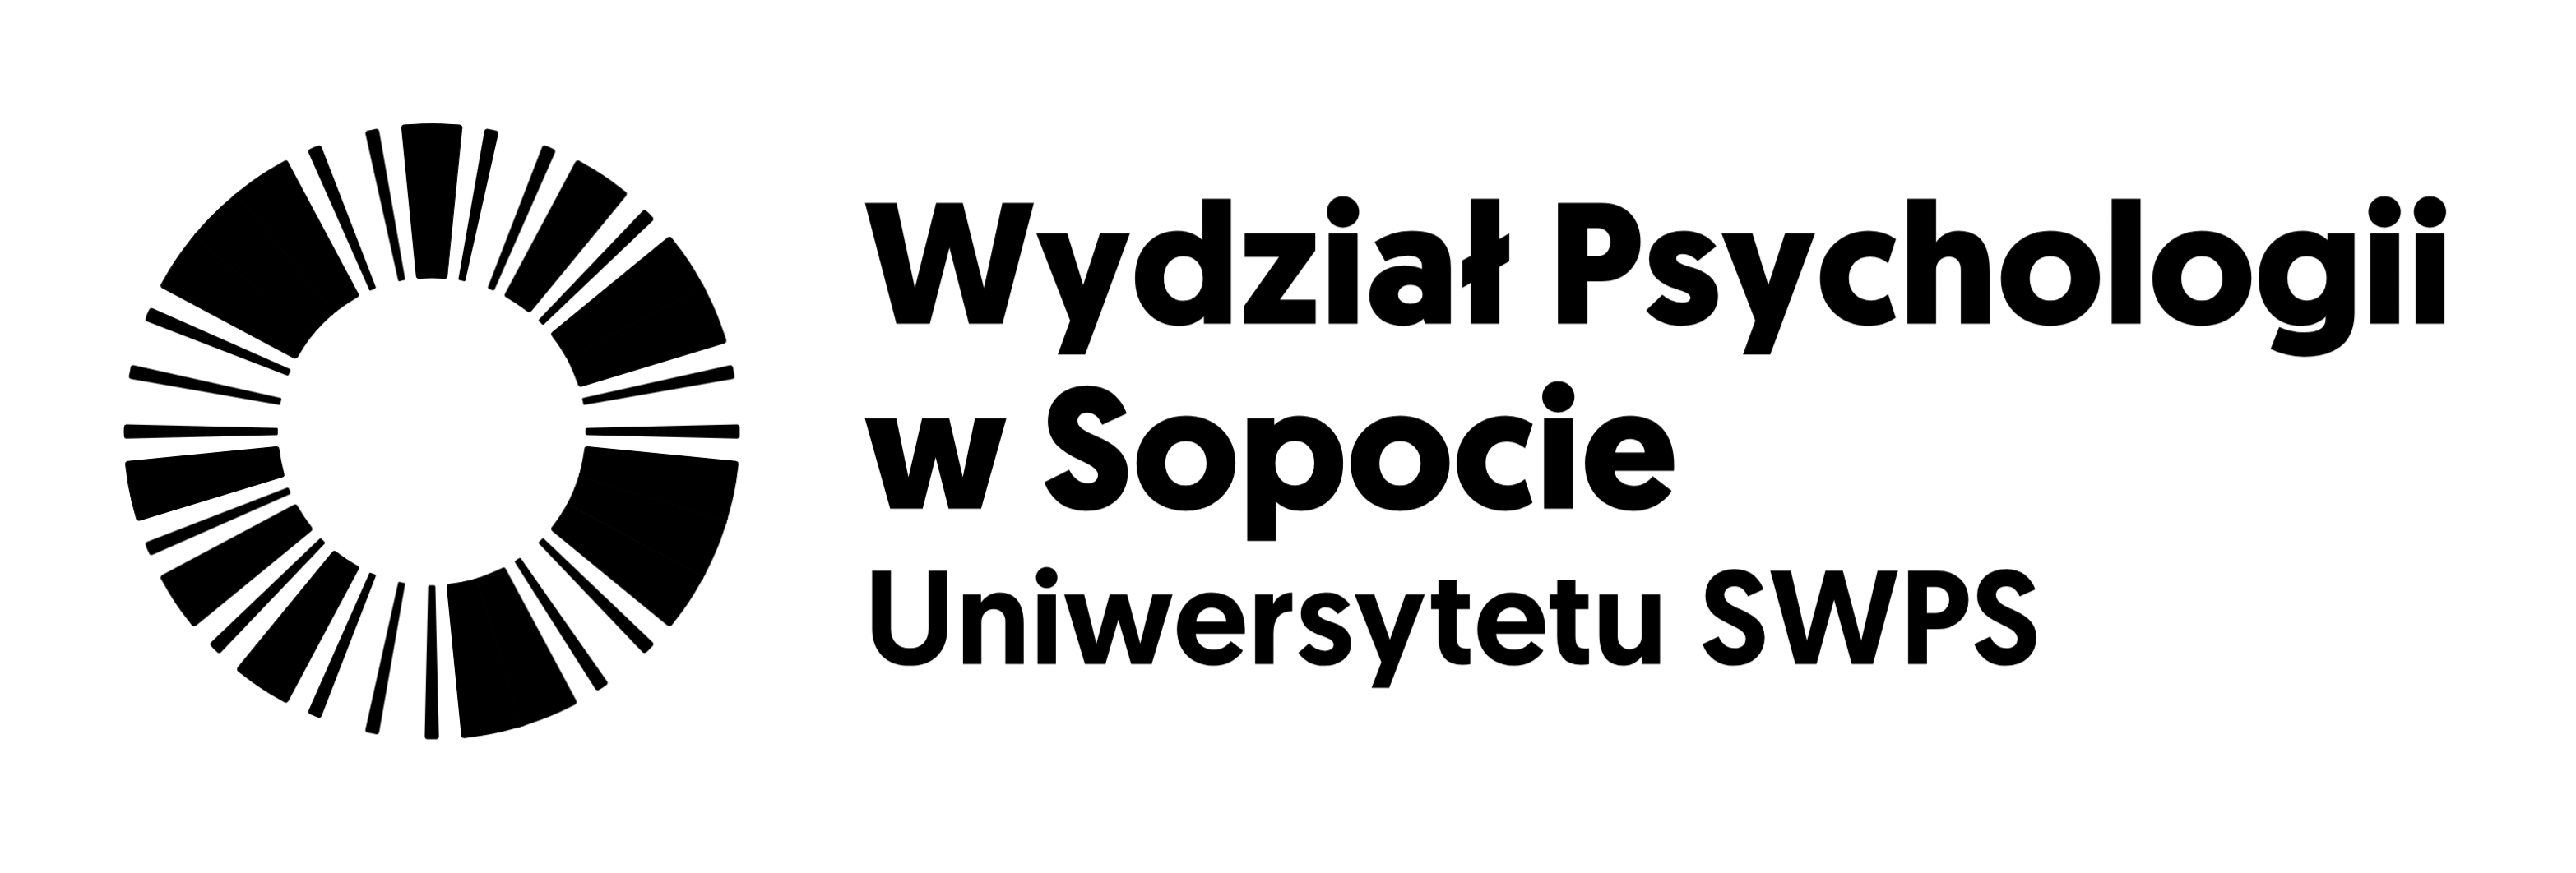 Wydział Psychologii w Sopocie